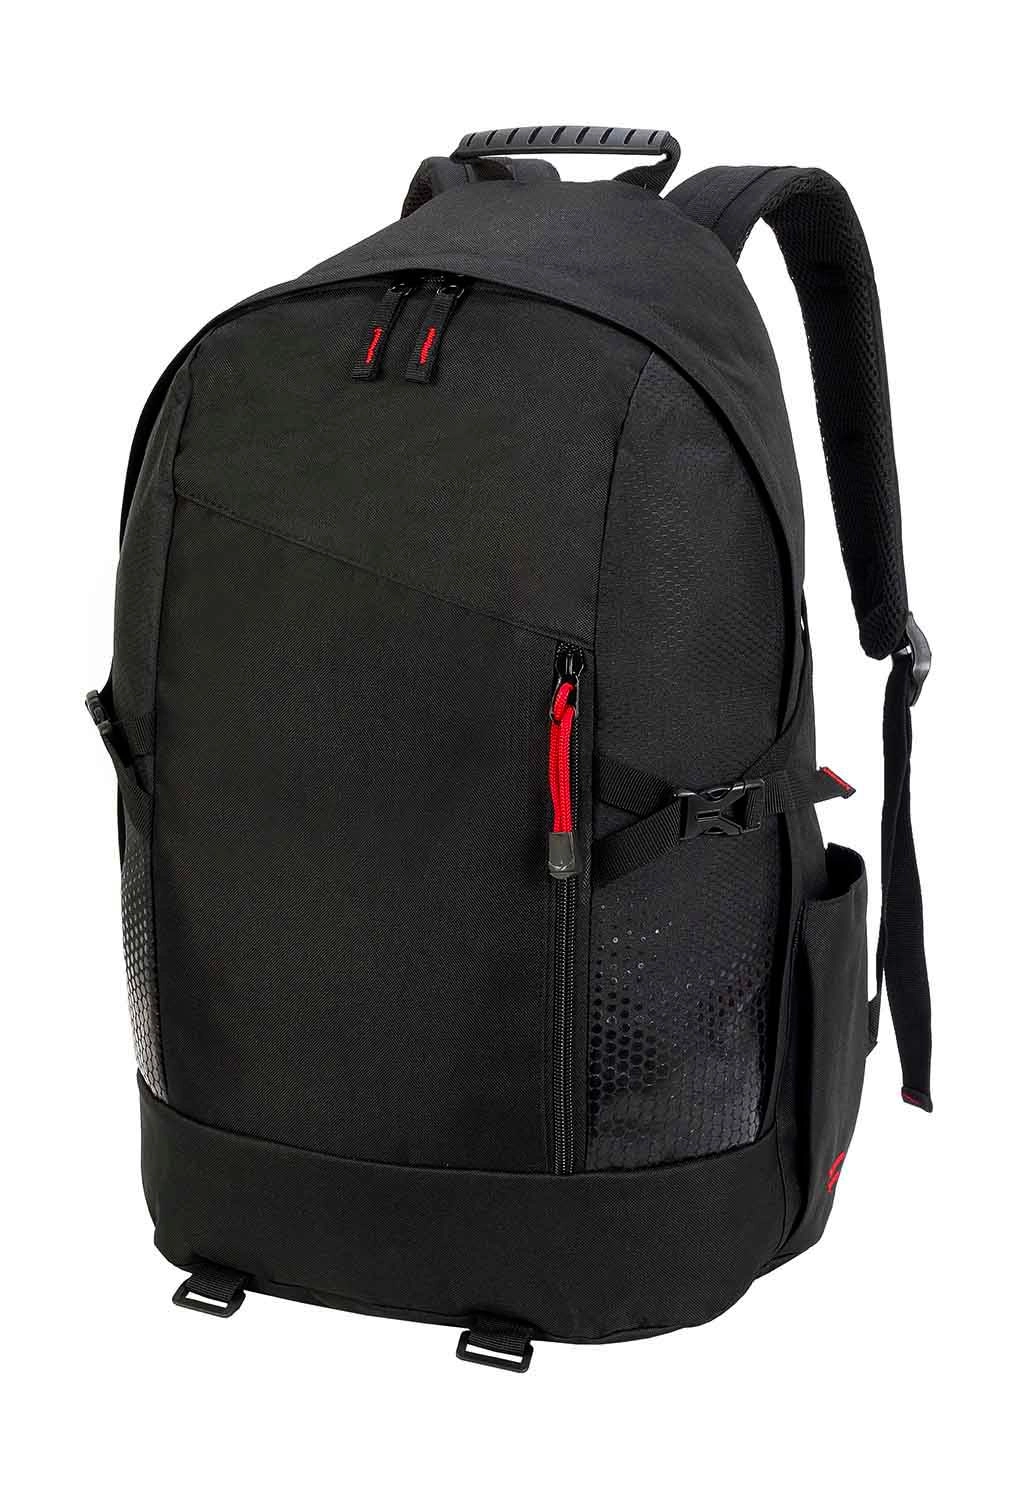 Gran Peirro Hiker Backpack zum Besticken und Bedrucken in der Farbe Black mit Ihren Logo, Schriftzug oder Motiv.